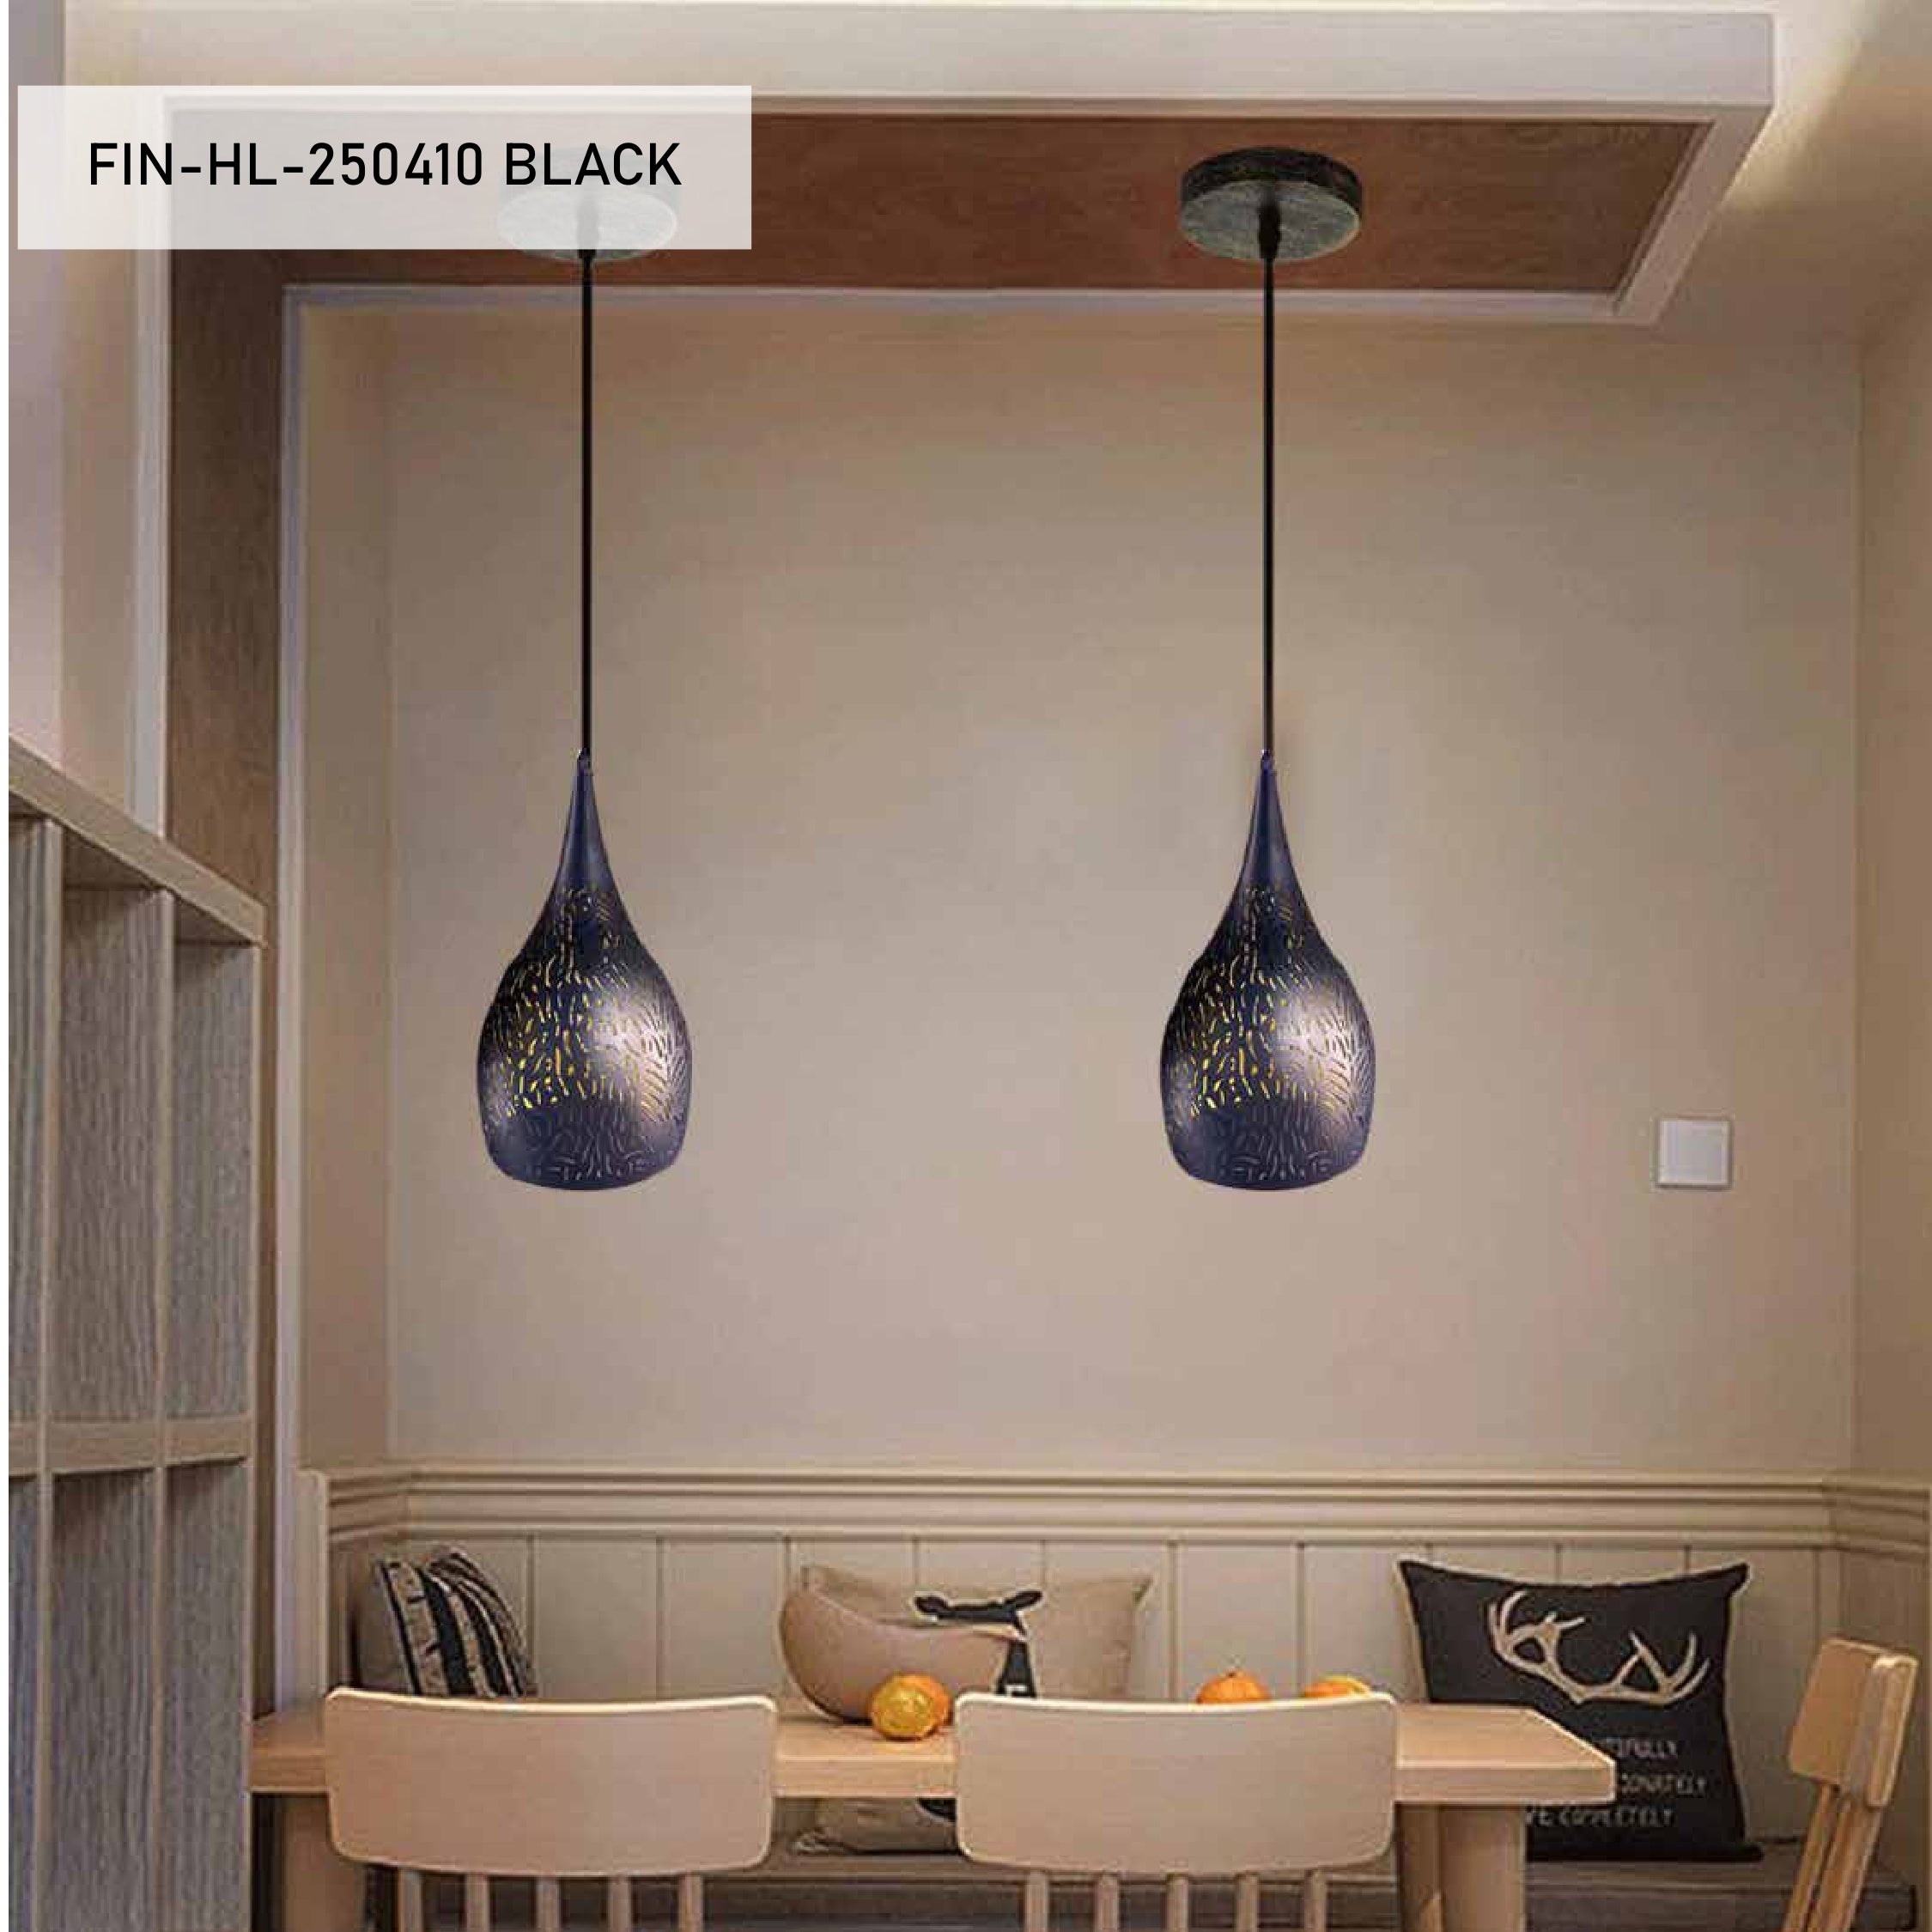 Metal pendant lights | FIN-HL-250410 BLACK